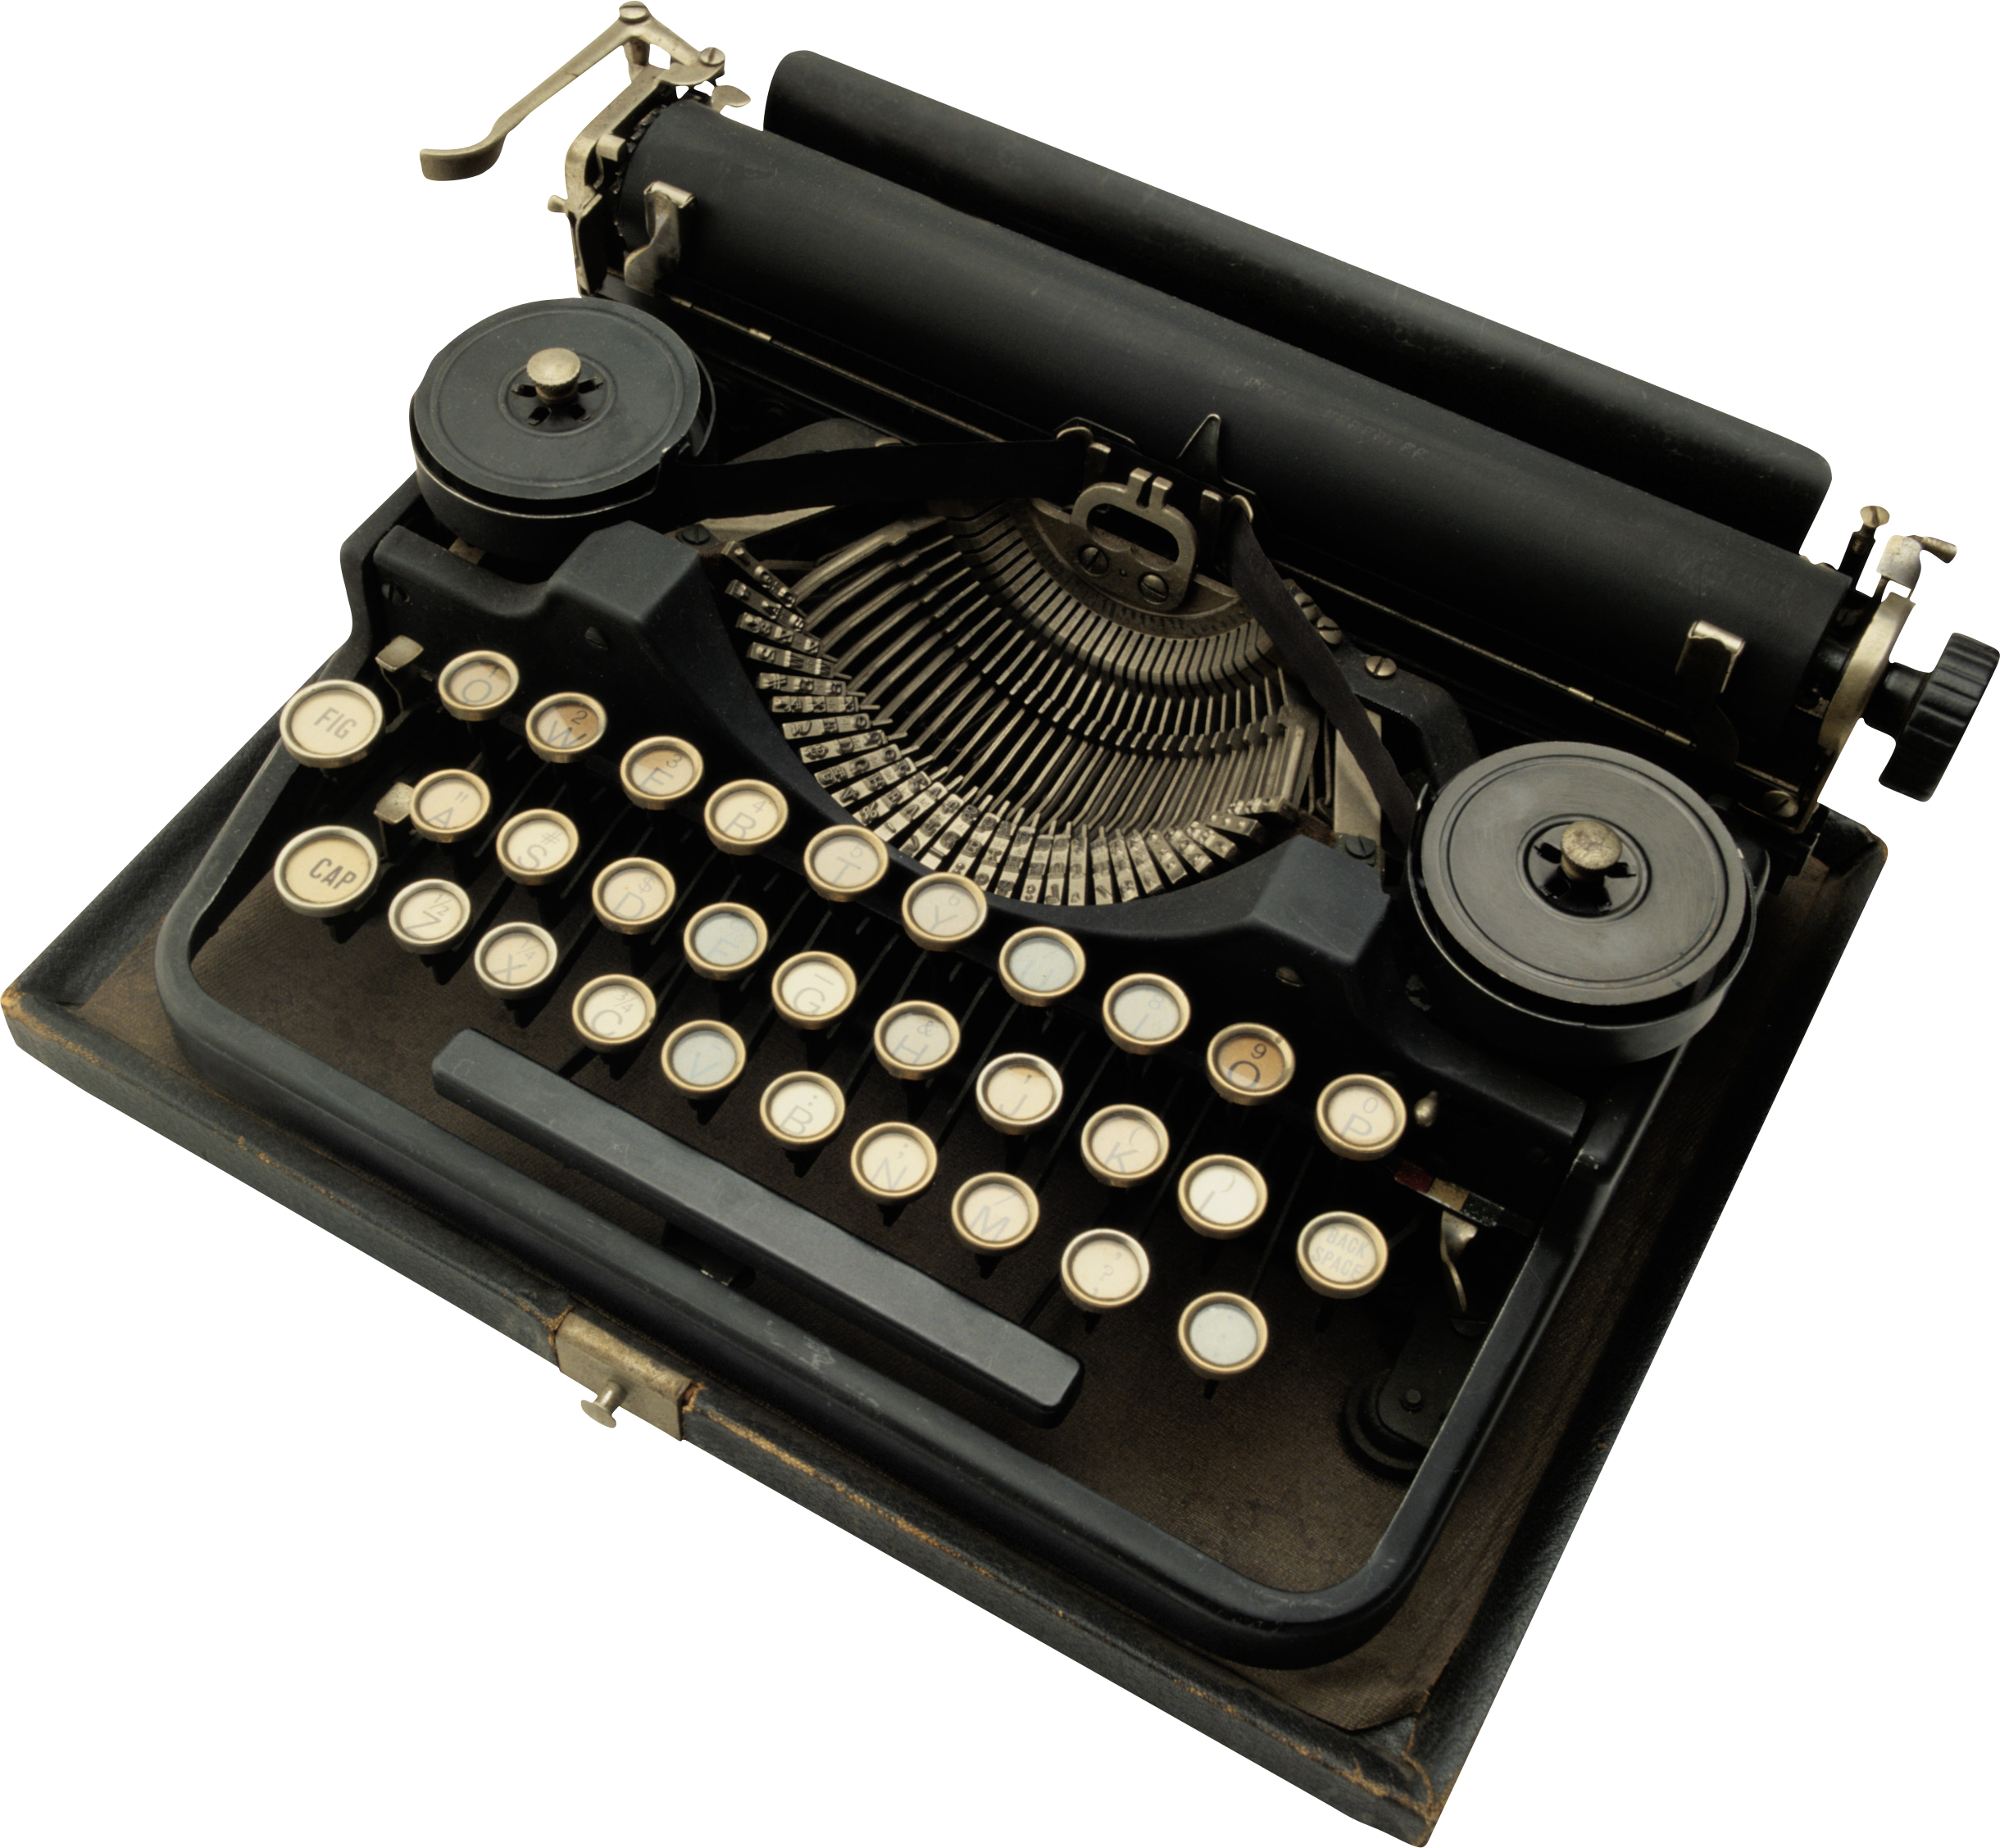 Typewriter PNG